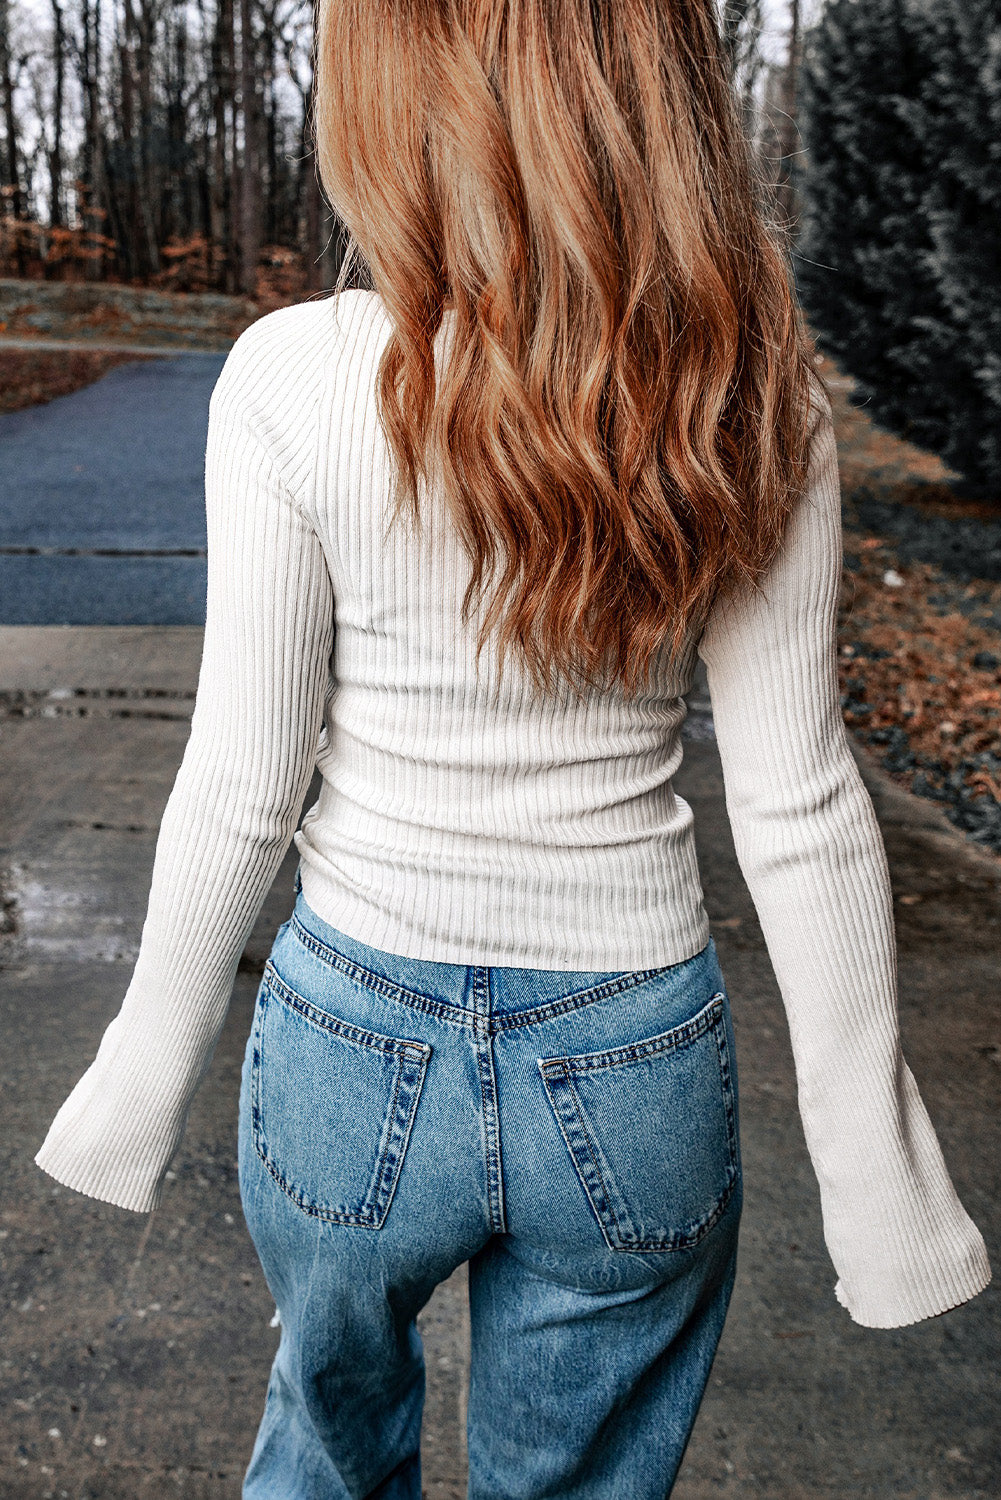 Bel pulover z rebrastim izrezom in kontrastnimi šivi